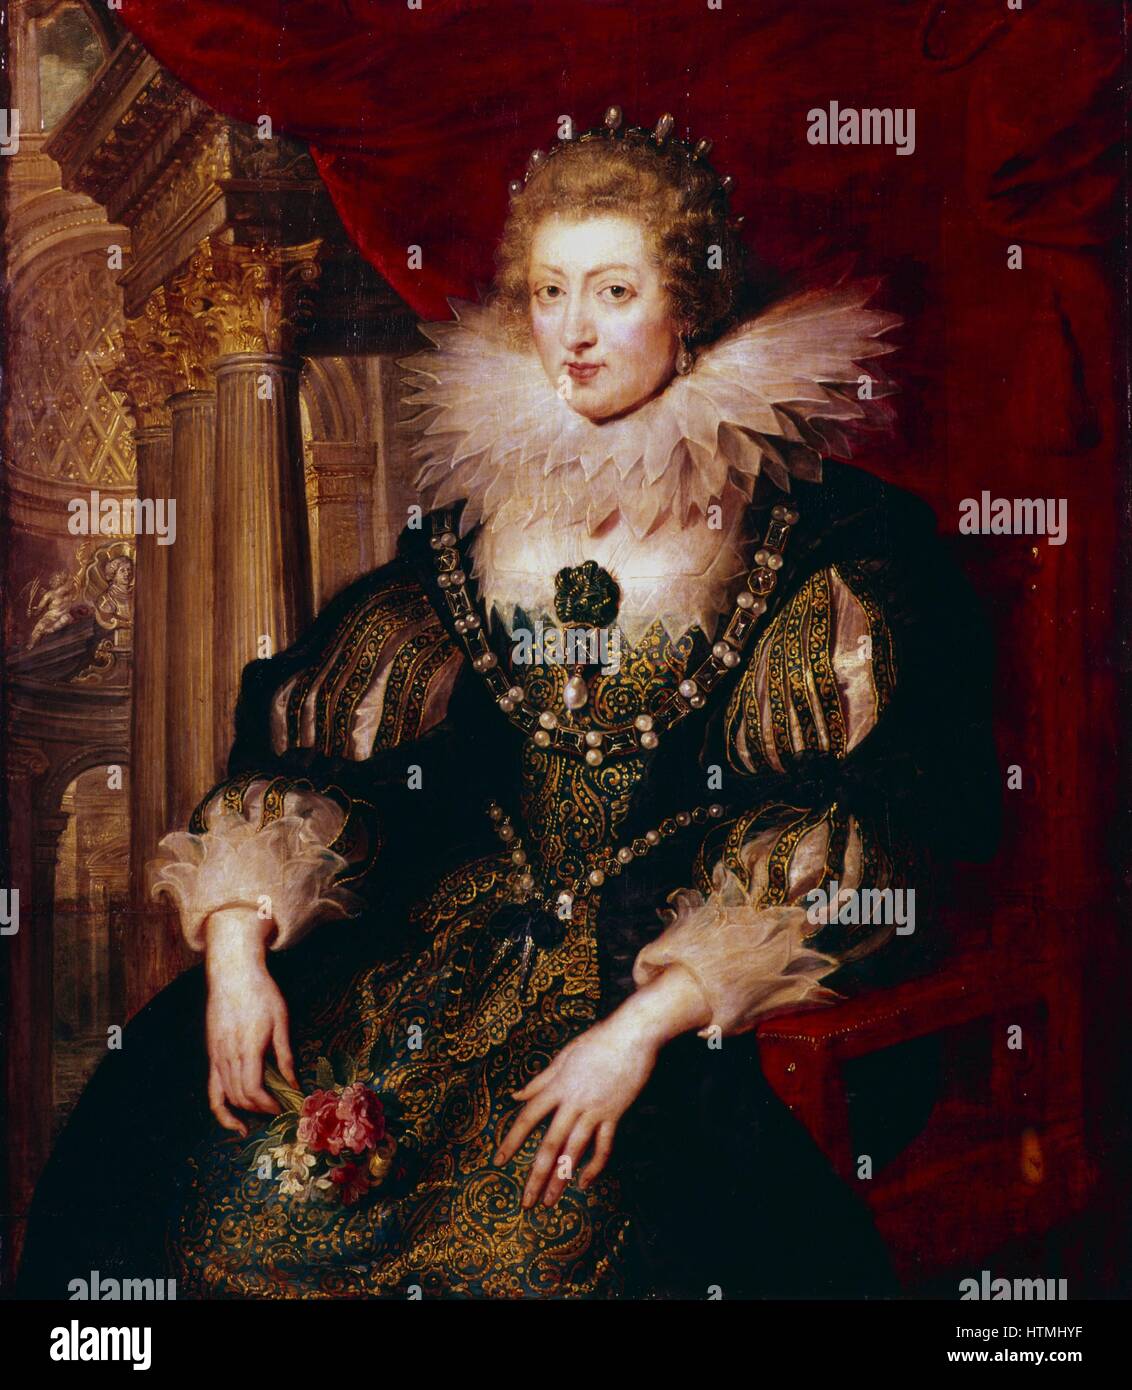 RUBENS (1577-1640) : ANNE D'AUTRICHE (1601-66) a épousé Louis XIII de France 1615. Louvre, Paris Banque D'Images